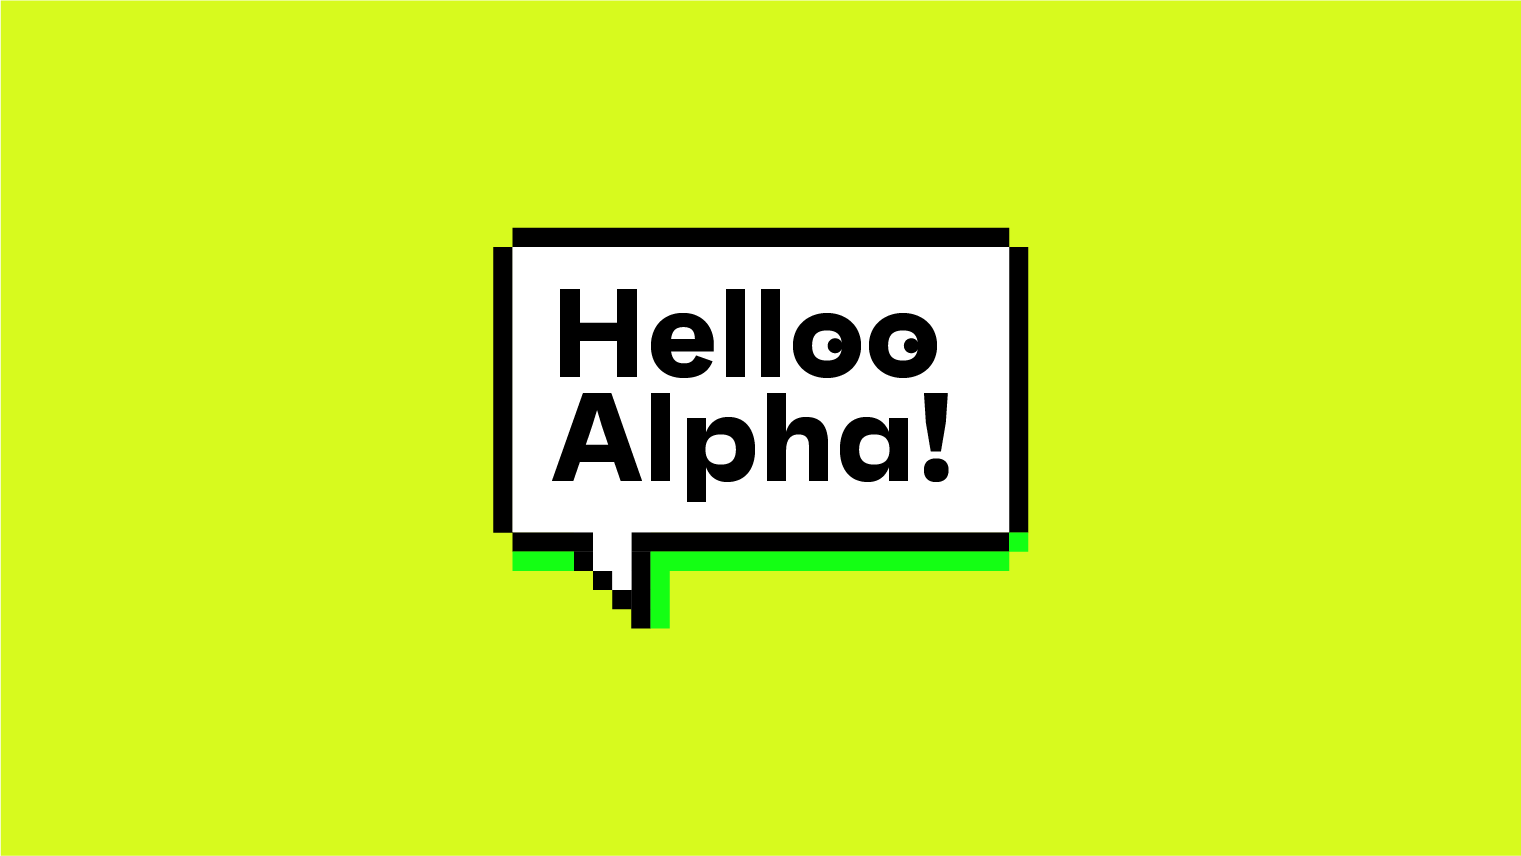 Helloo Alpha!